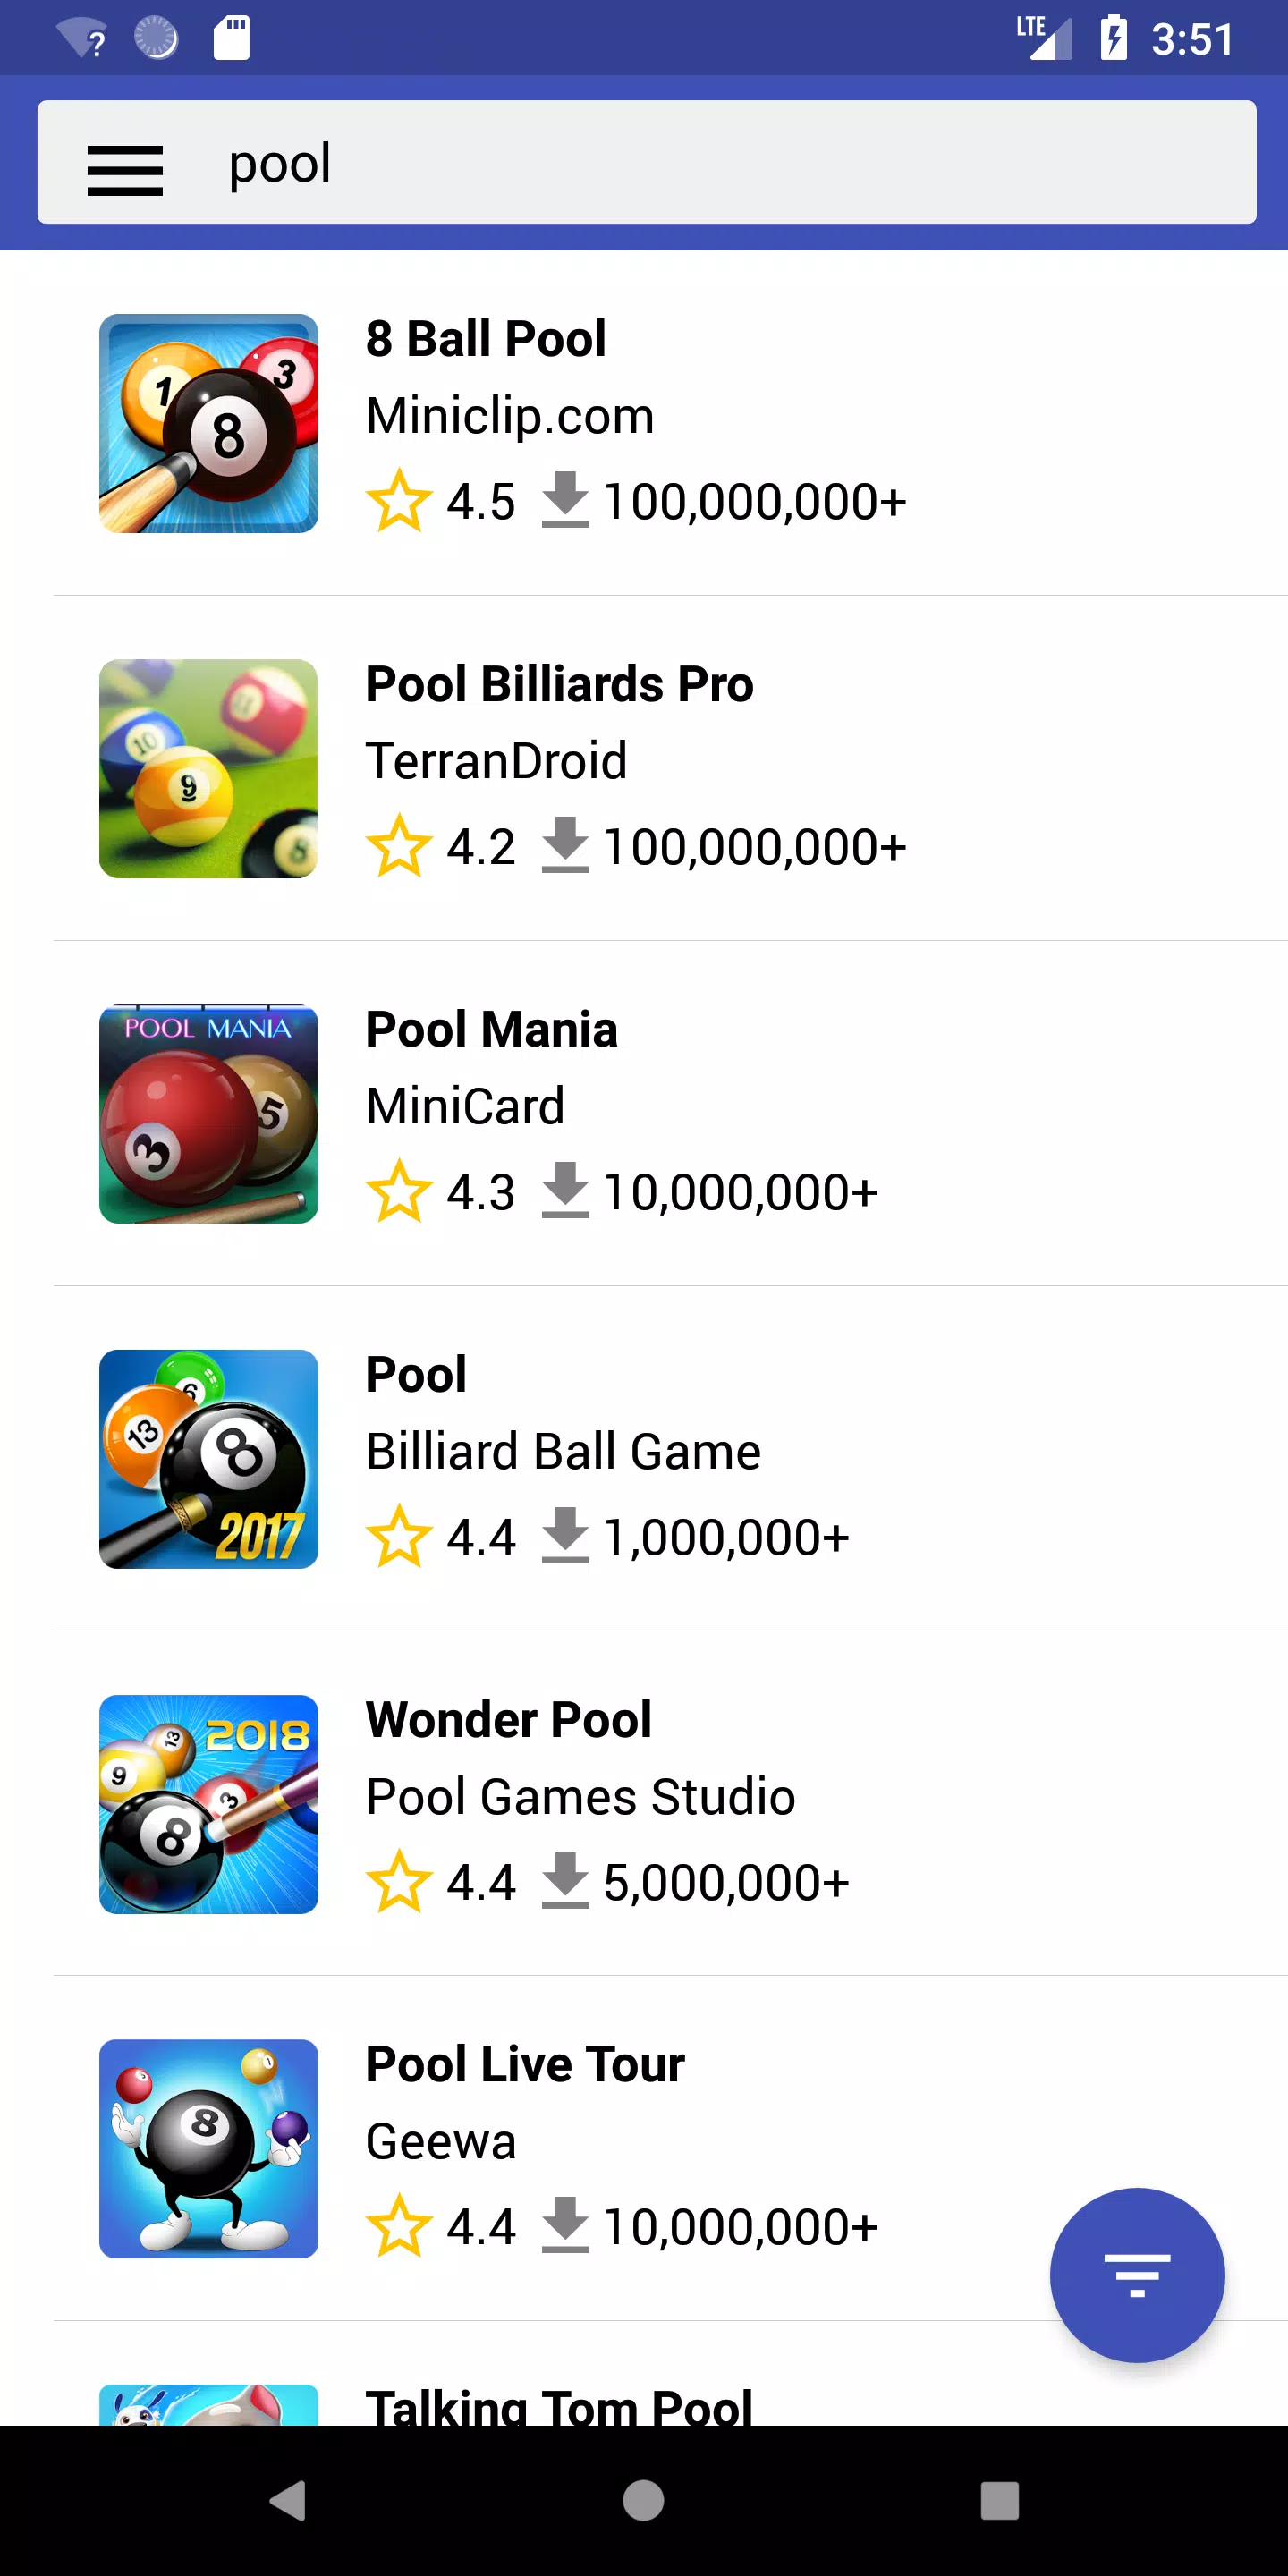 Baixar Grátis Games Store App Market APK para Android